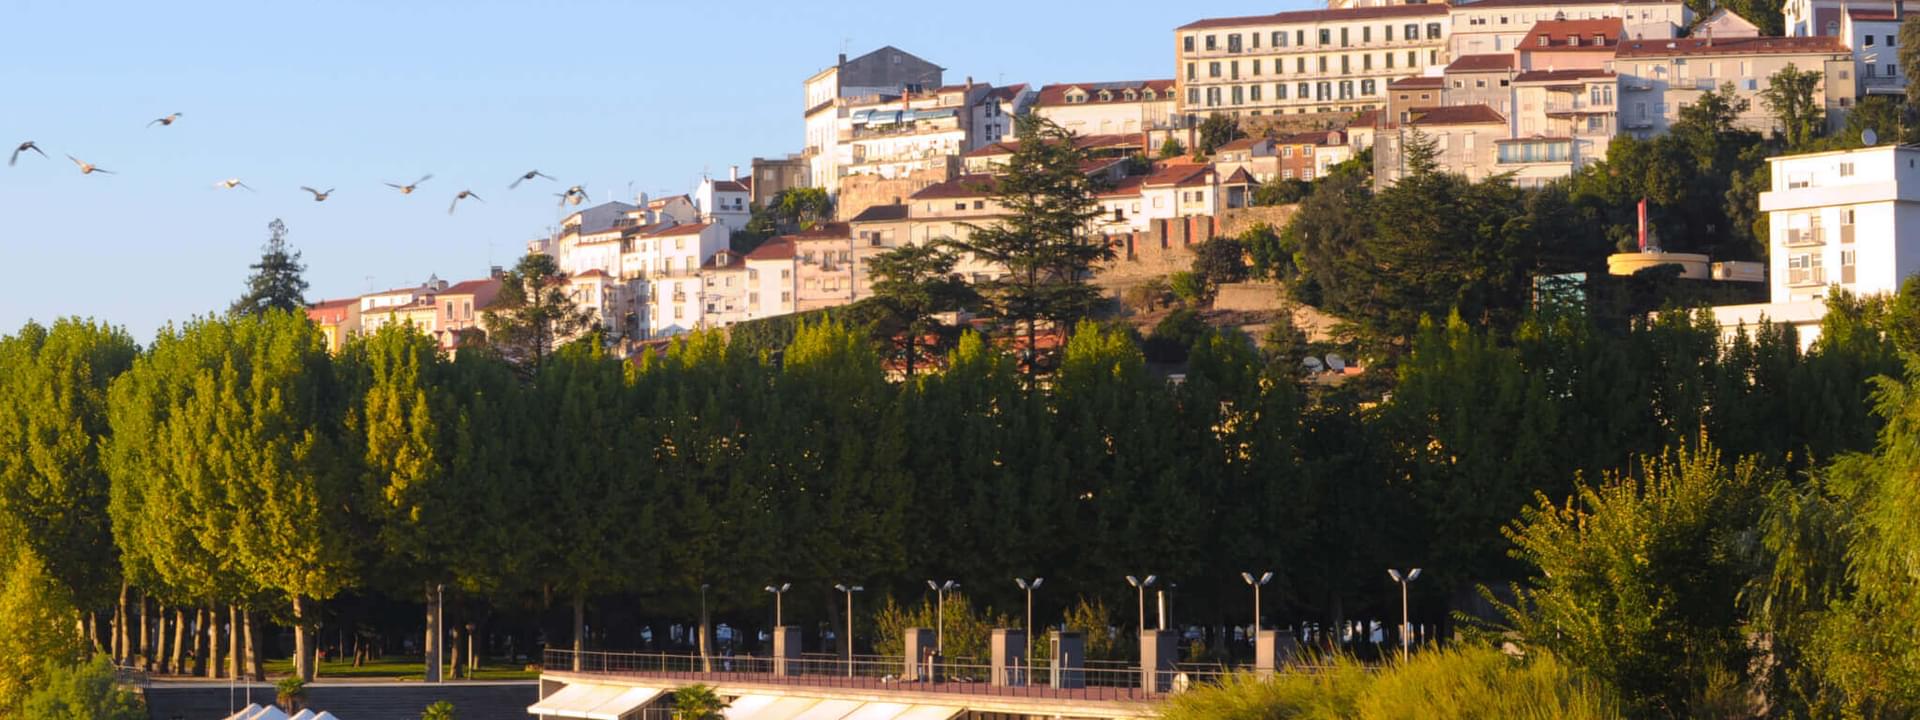 17 melhores cidades para visitar no Centro de Portugal